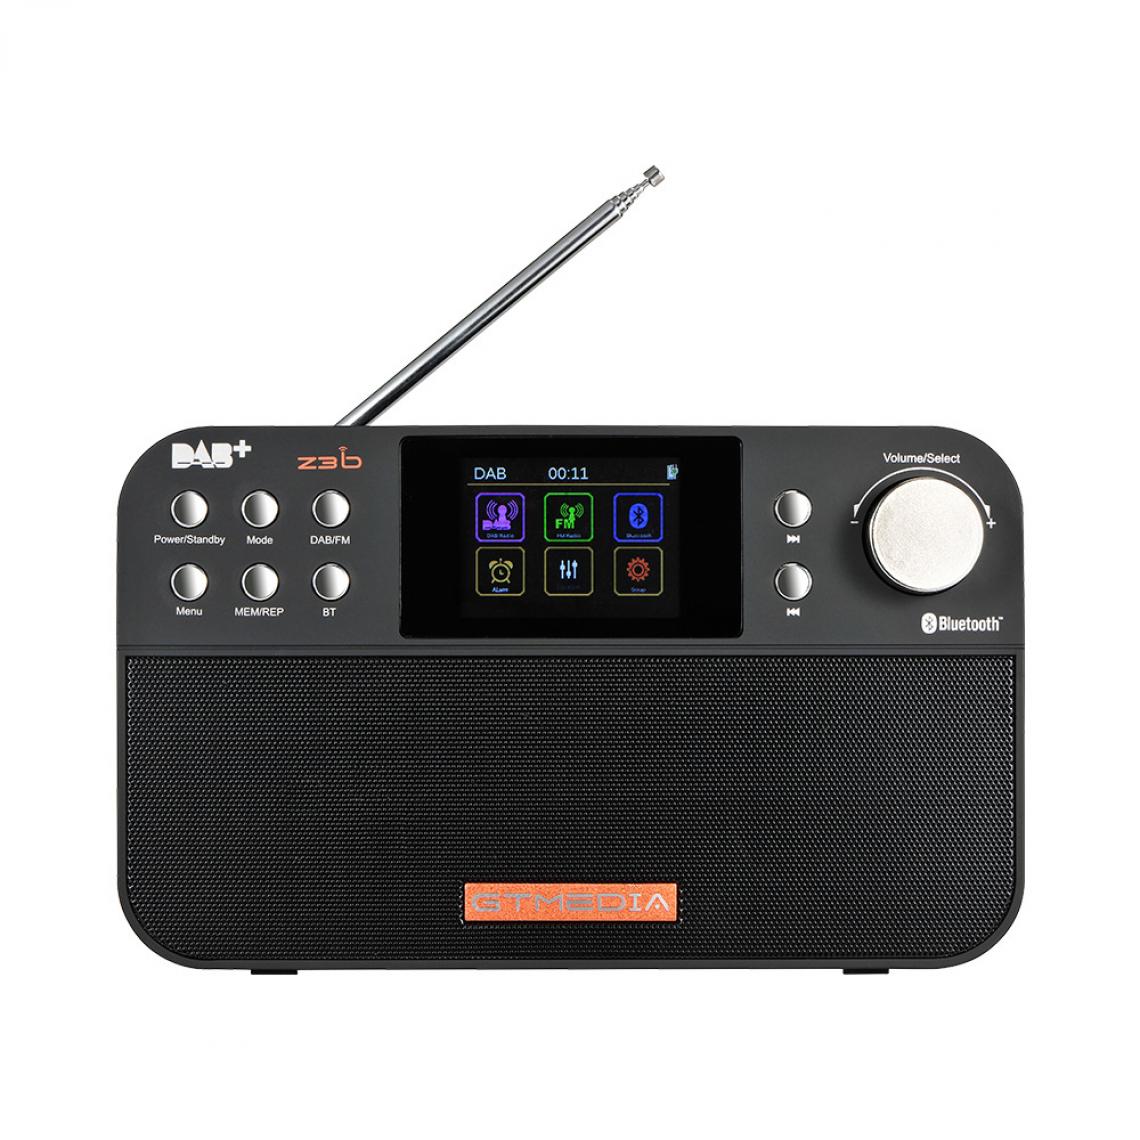 Universal - Radio portable FM DAB, haut-parleur radio multibande stéréo/RDS, avec écran à cristaux liquides, réveil, prise en charge de la carte SD TF(Le noir) - Radio